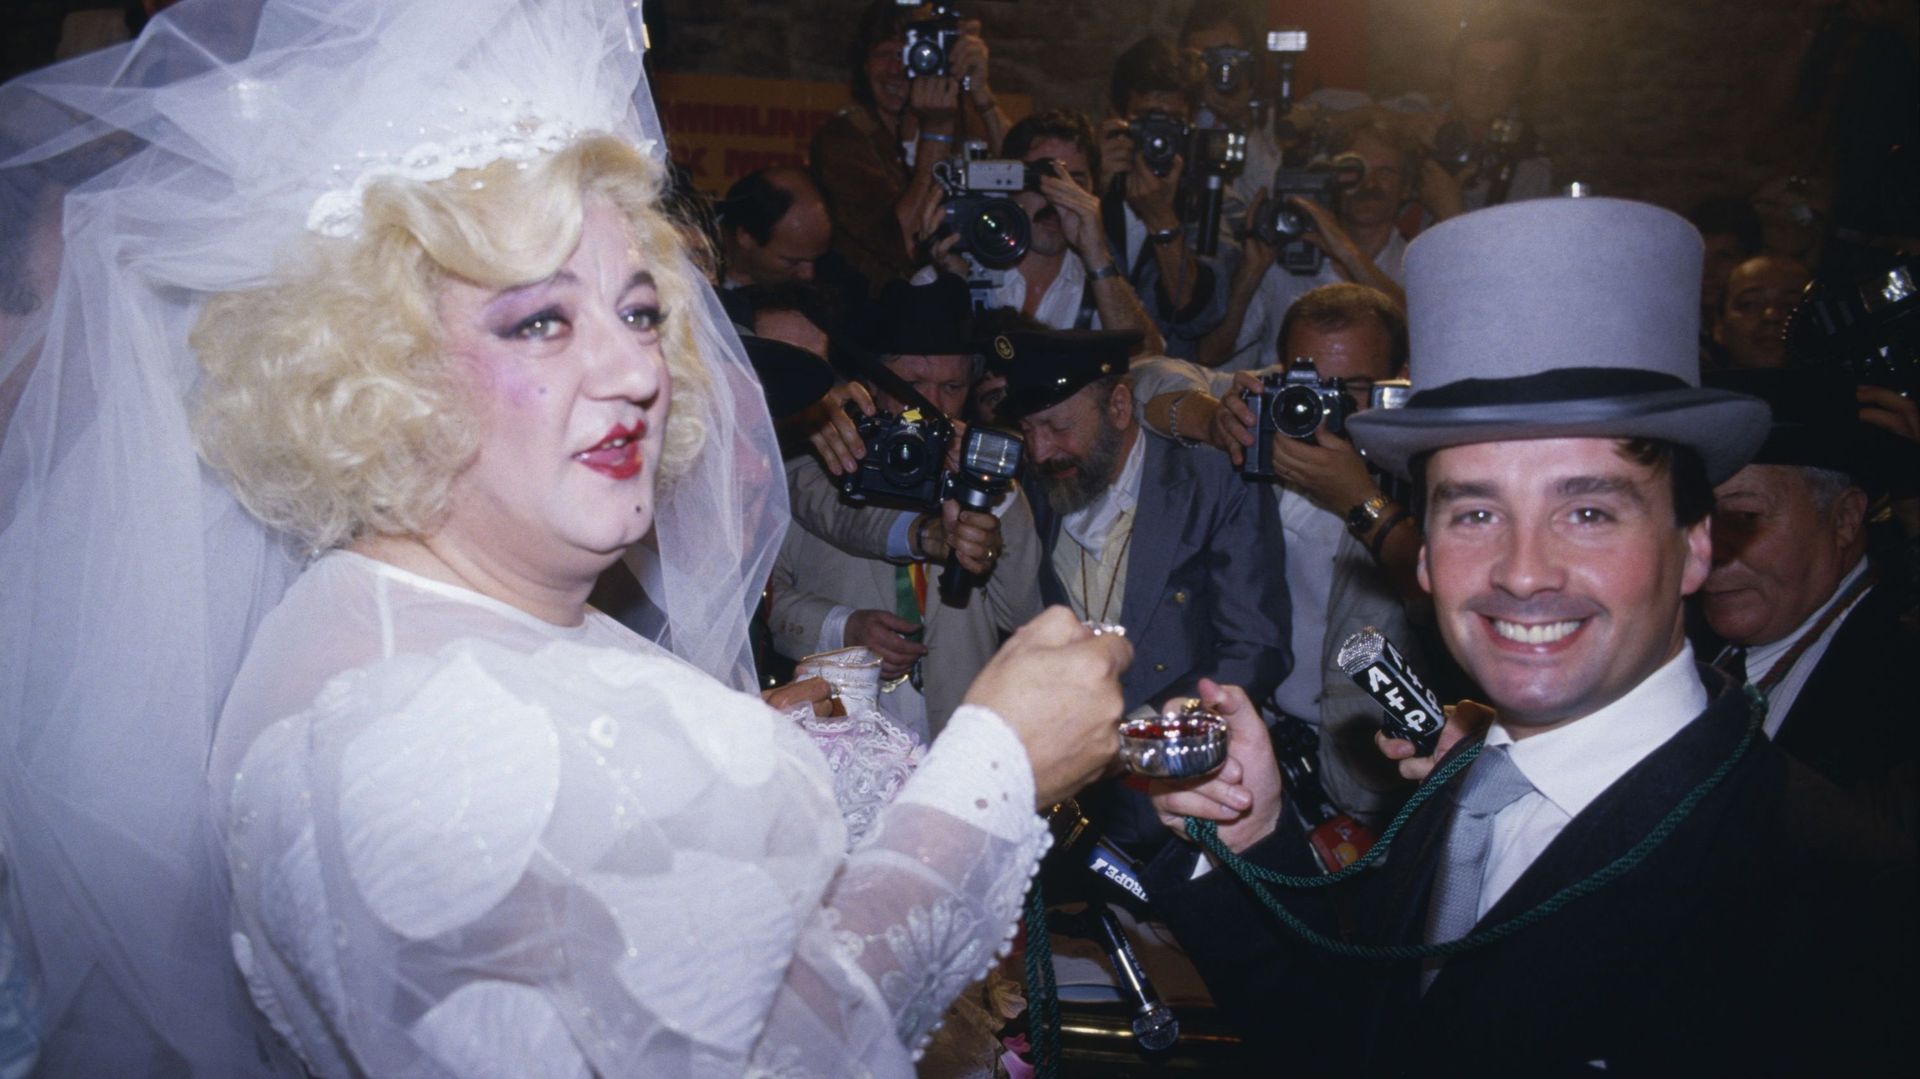 Le mariage du siècle ! Coluche et Thierry Le Luron, 1985